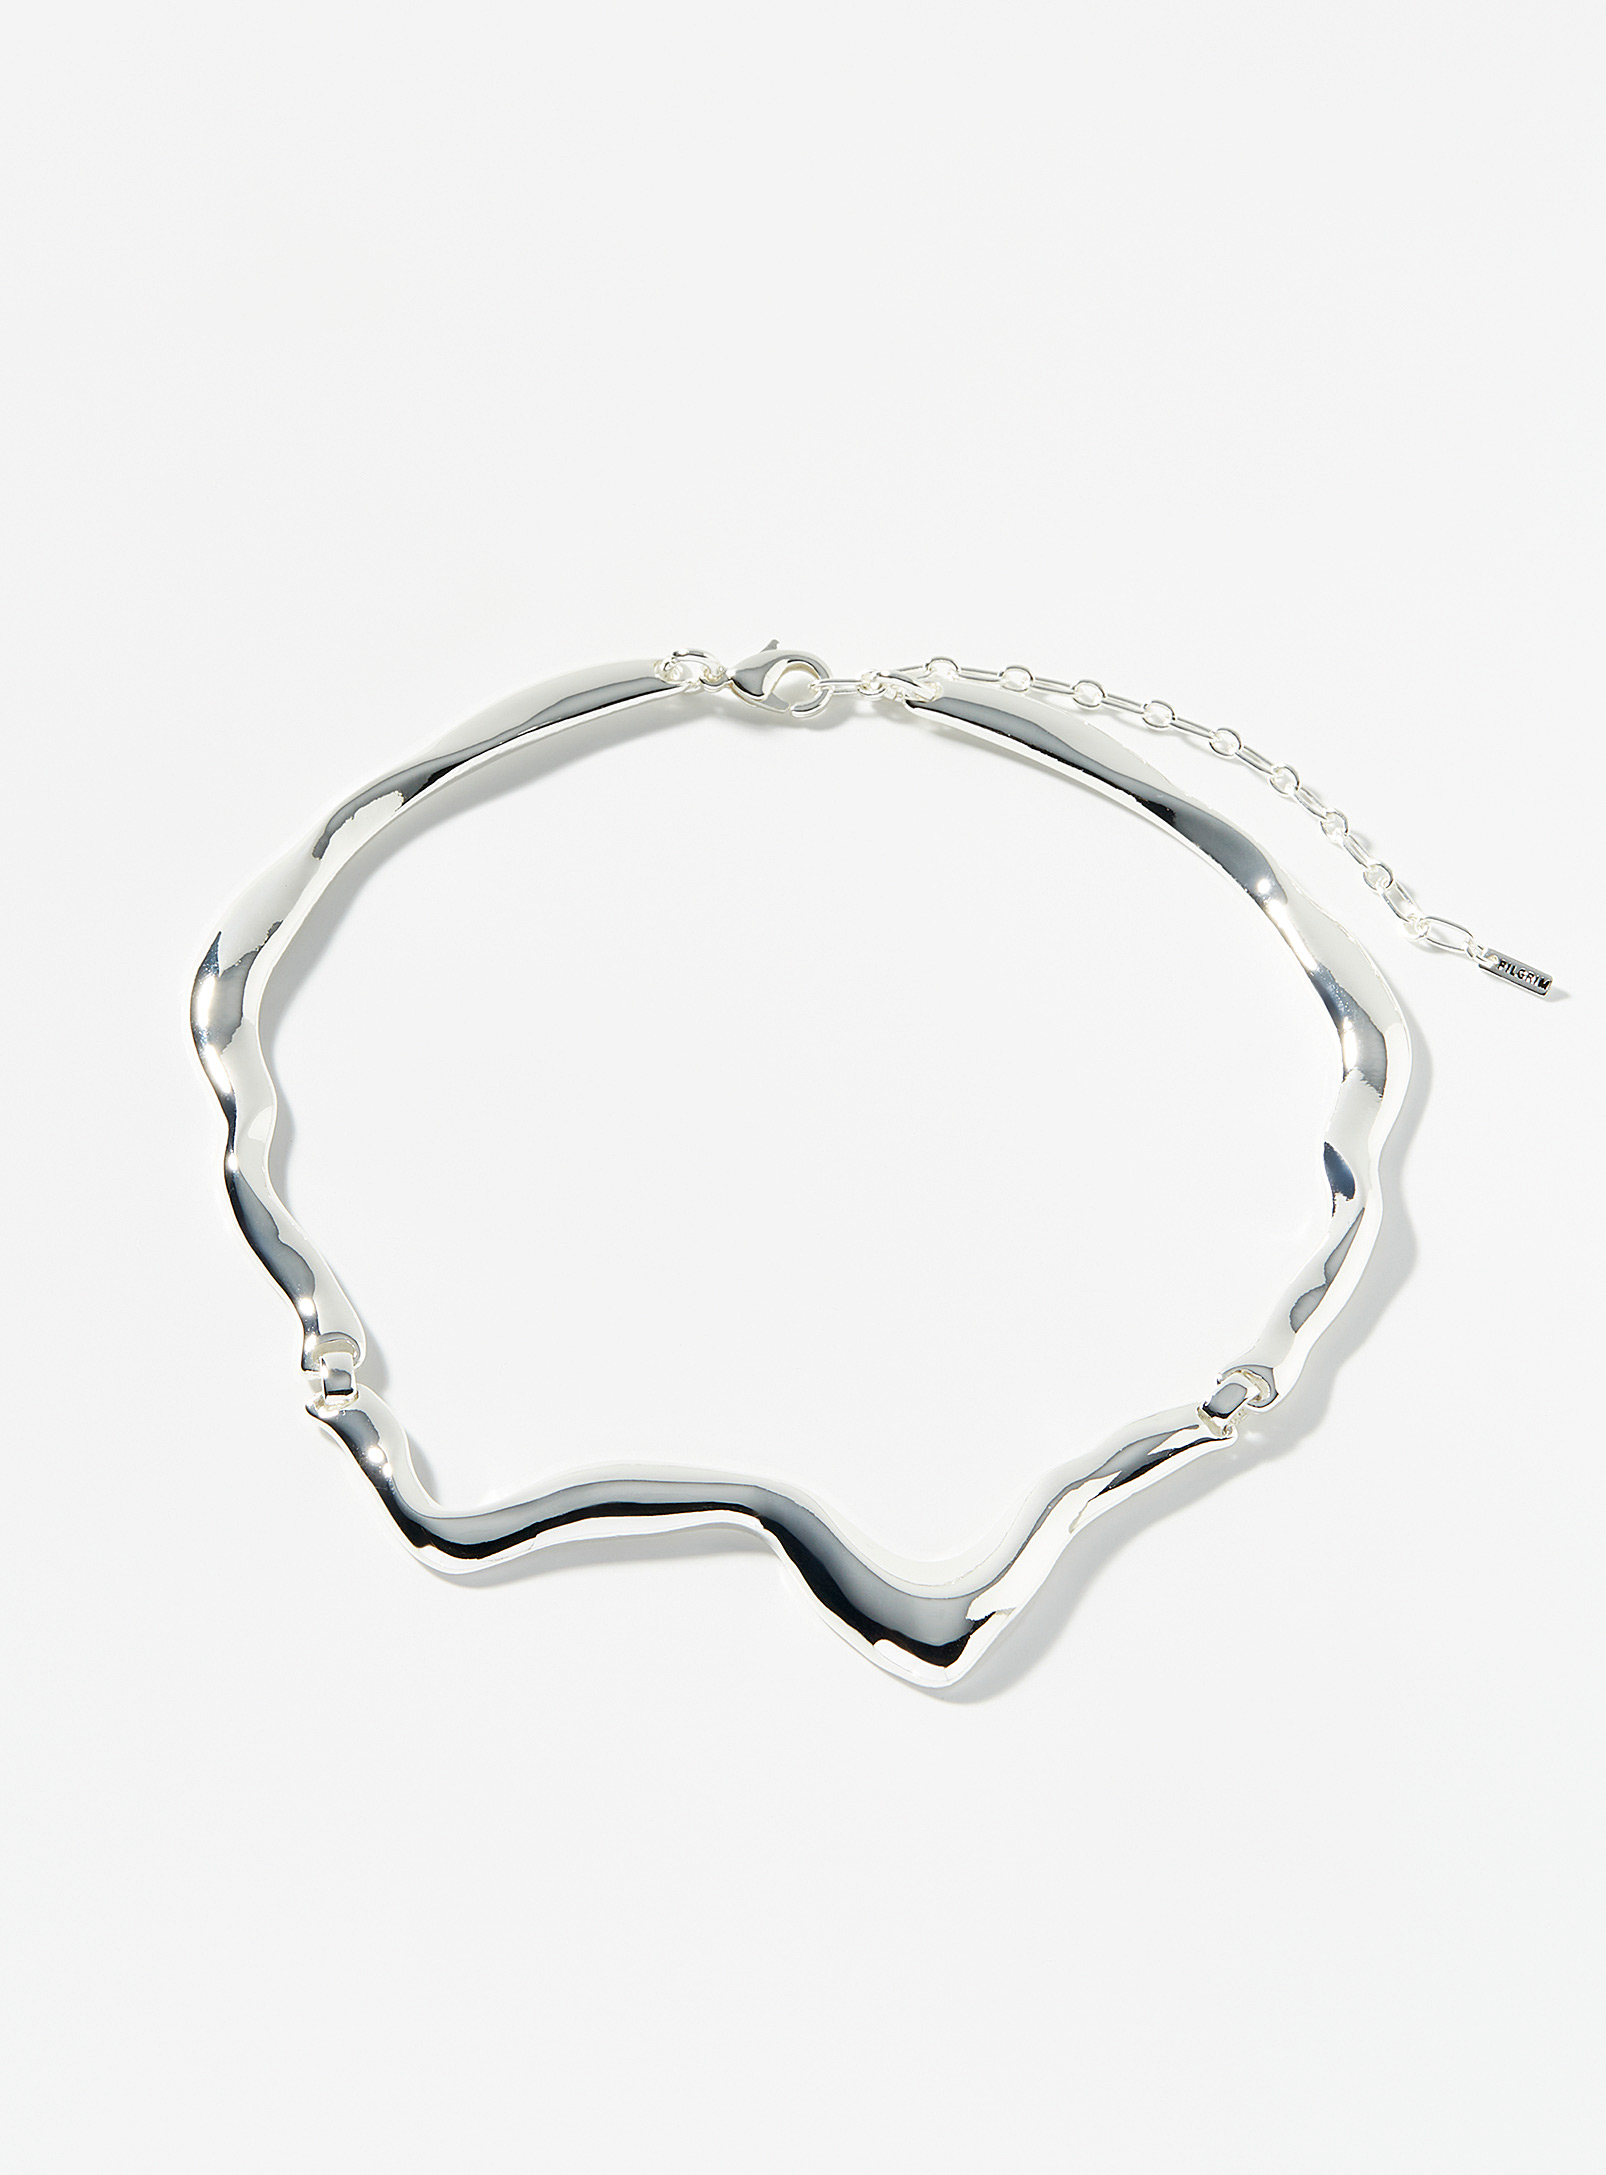 Pilgrim - Women's Curved rigid necklace